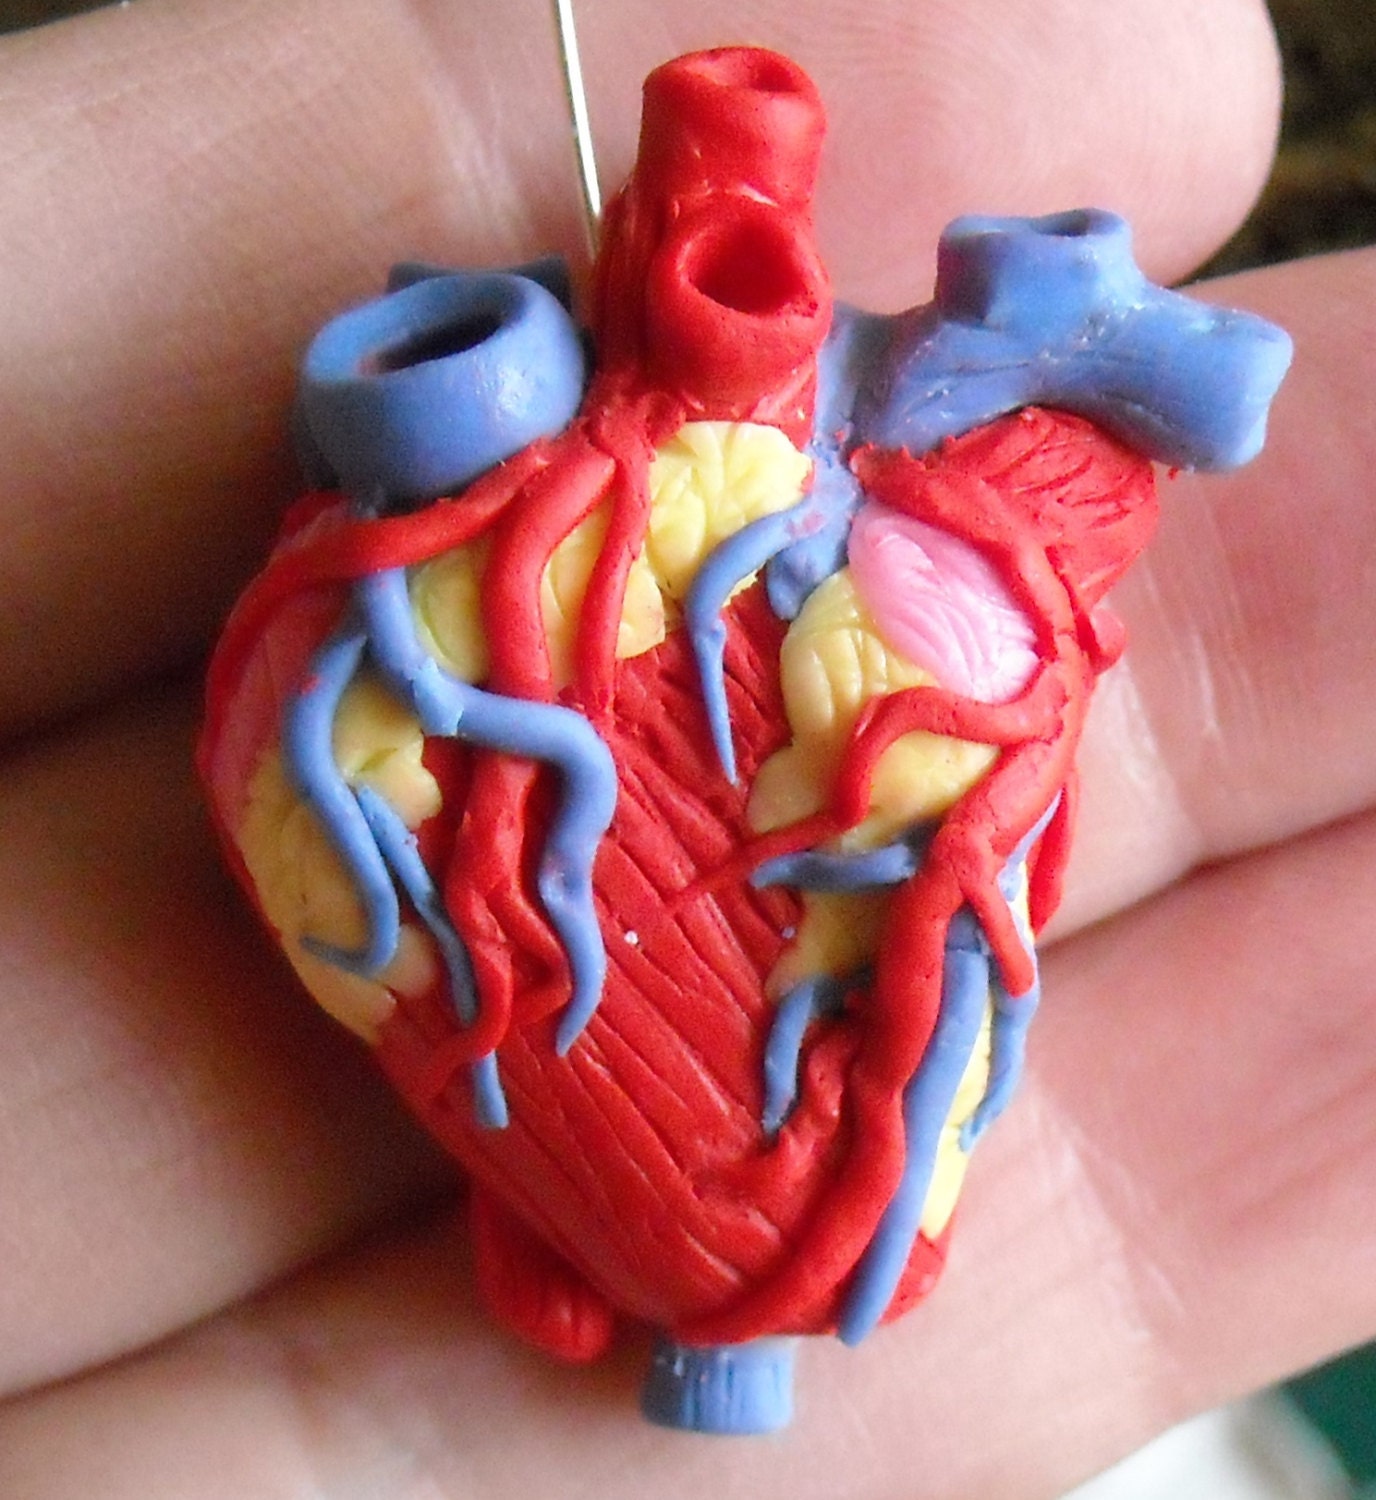 Сердце из пластилина. Сердце человека из пластилина. Человеческое сердце из пластилина. Макет сердца человека. Макет сердца человека из пластилина.